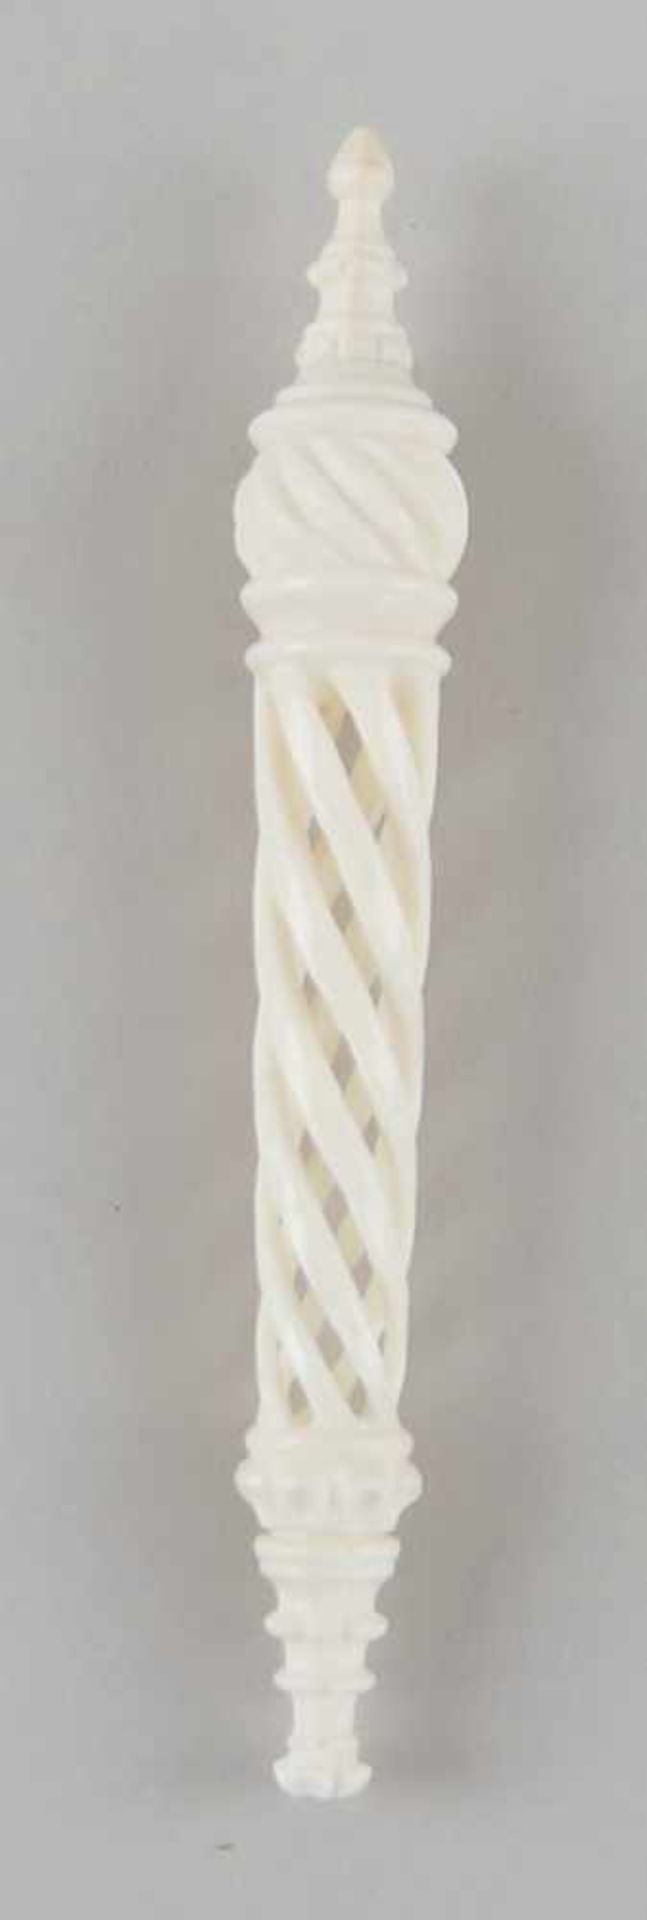 Fein geschnitzter Nadelhalter aus Elfenbein, 19. JH, L 13,5cm - Bild 3 aus 4